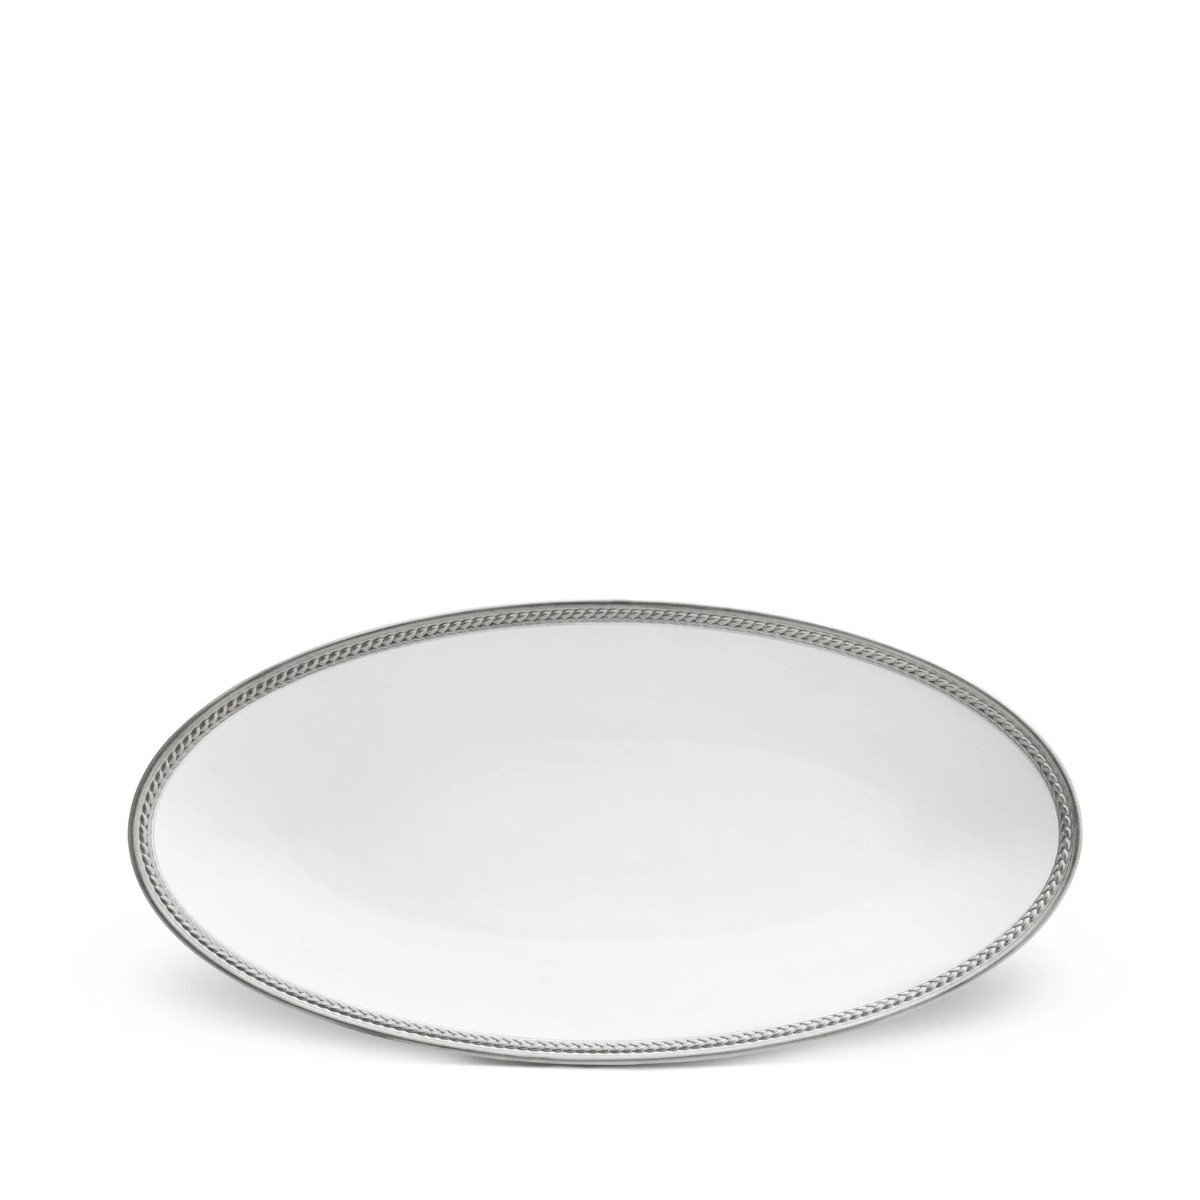 L’Objet | Soie Tressee Oval Platter - Small | Platinum